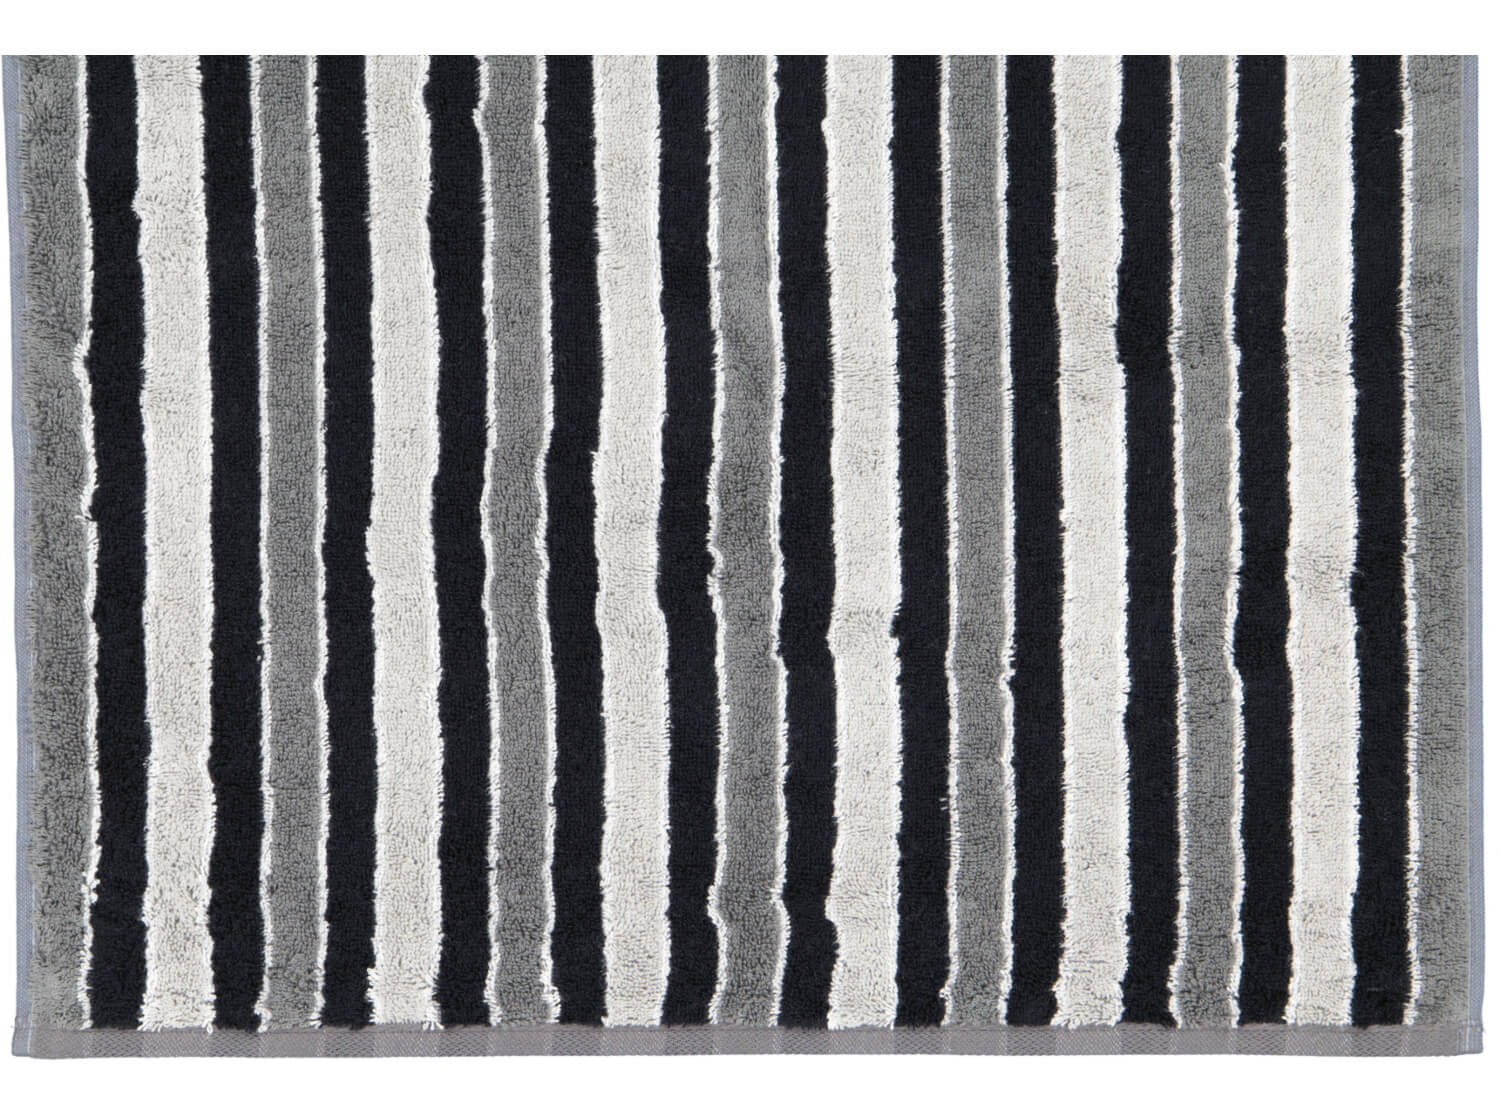 Полотенце премиум класса  Edition Stripes Platin (647-76)